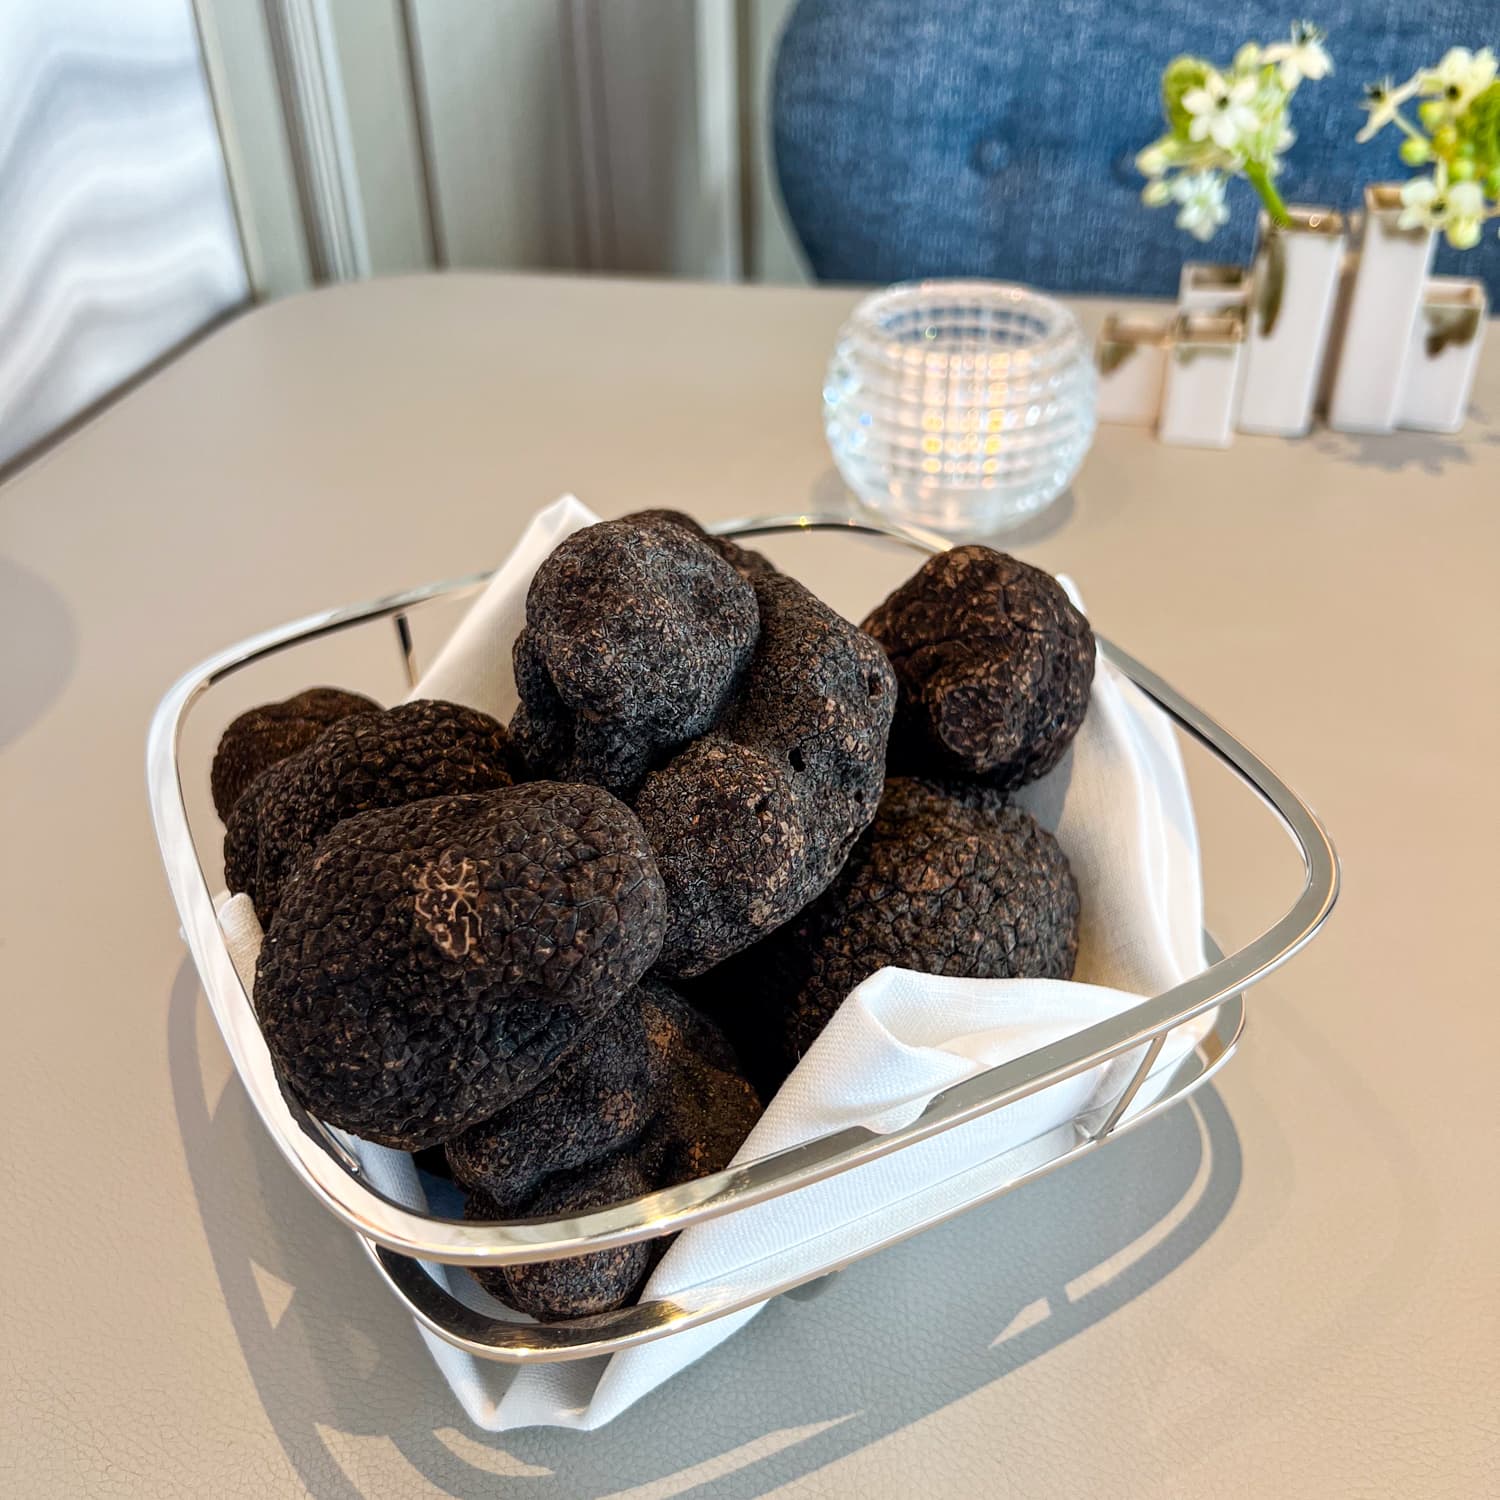 Black winter truffles from Montpellier, France